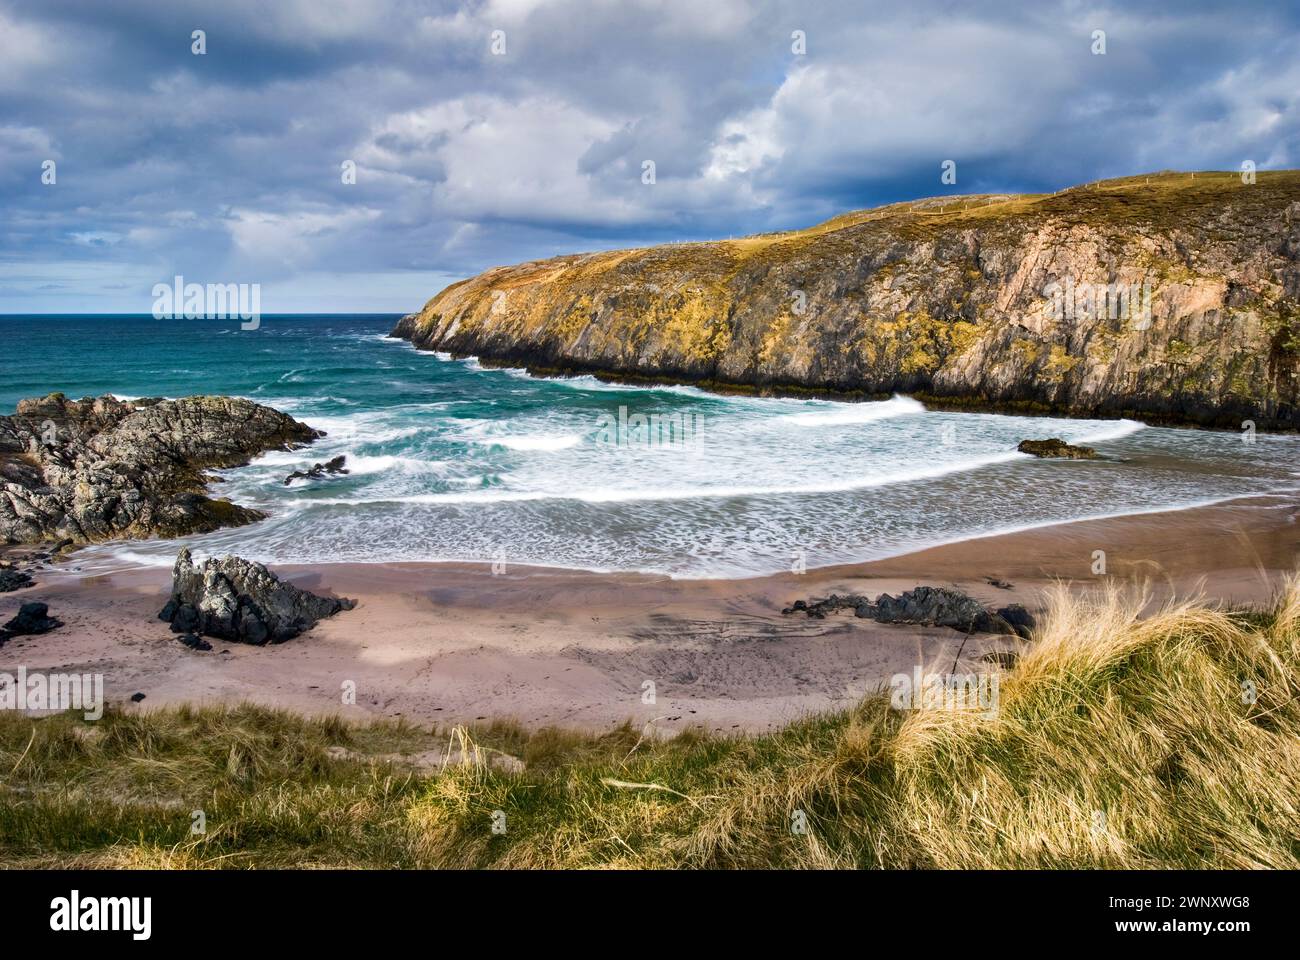 Plage de Sango Bay sur la côte la plus septentrionale de l'Écosse, située juste à l'extérieur de Durness dans le district de Sutherland juste à côté de la route A838, United Ki Banque D'Images